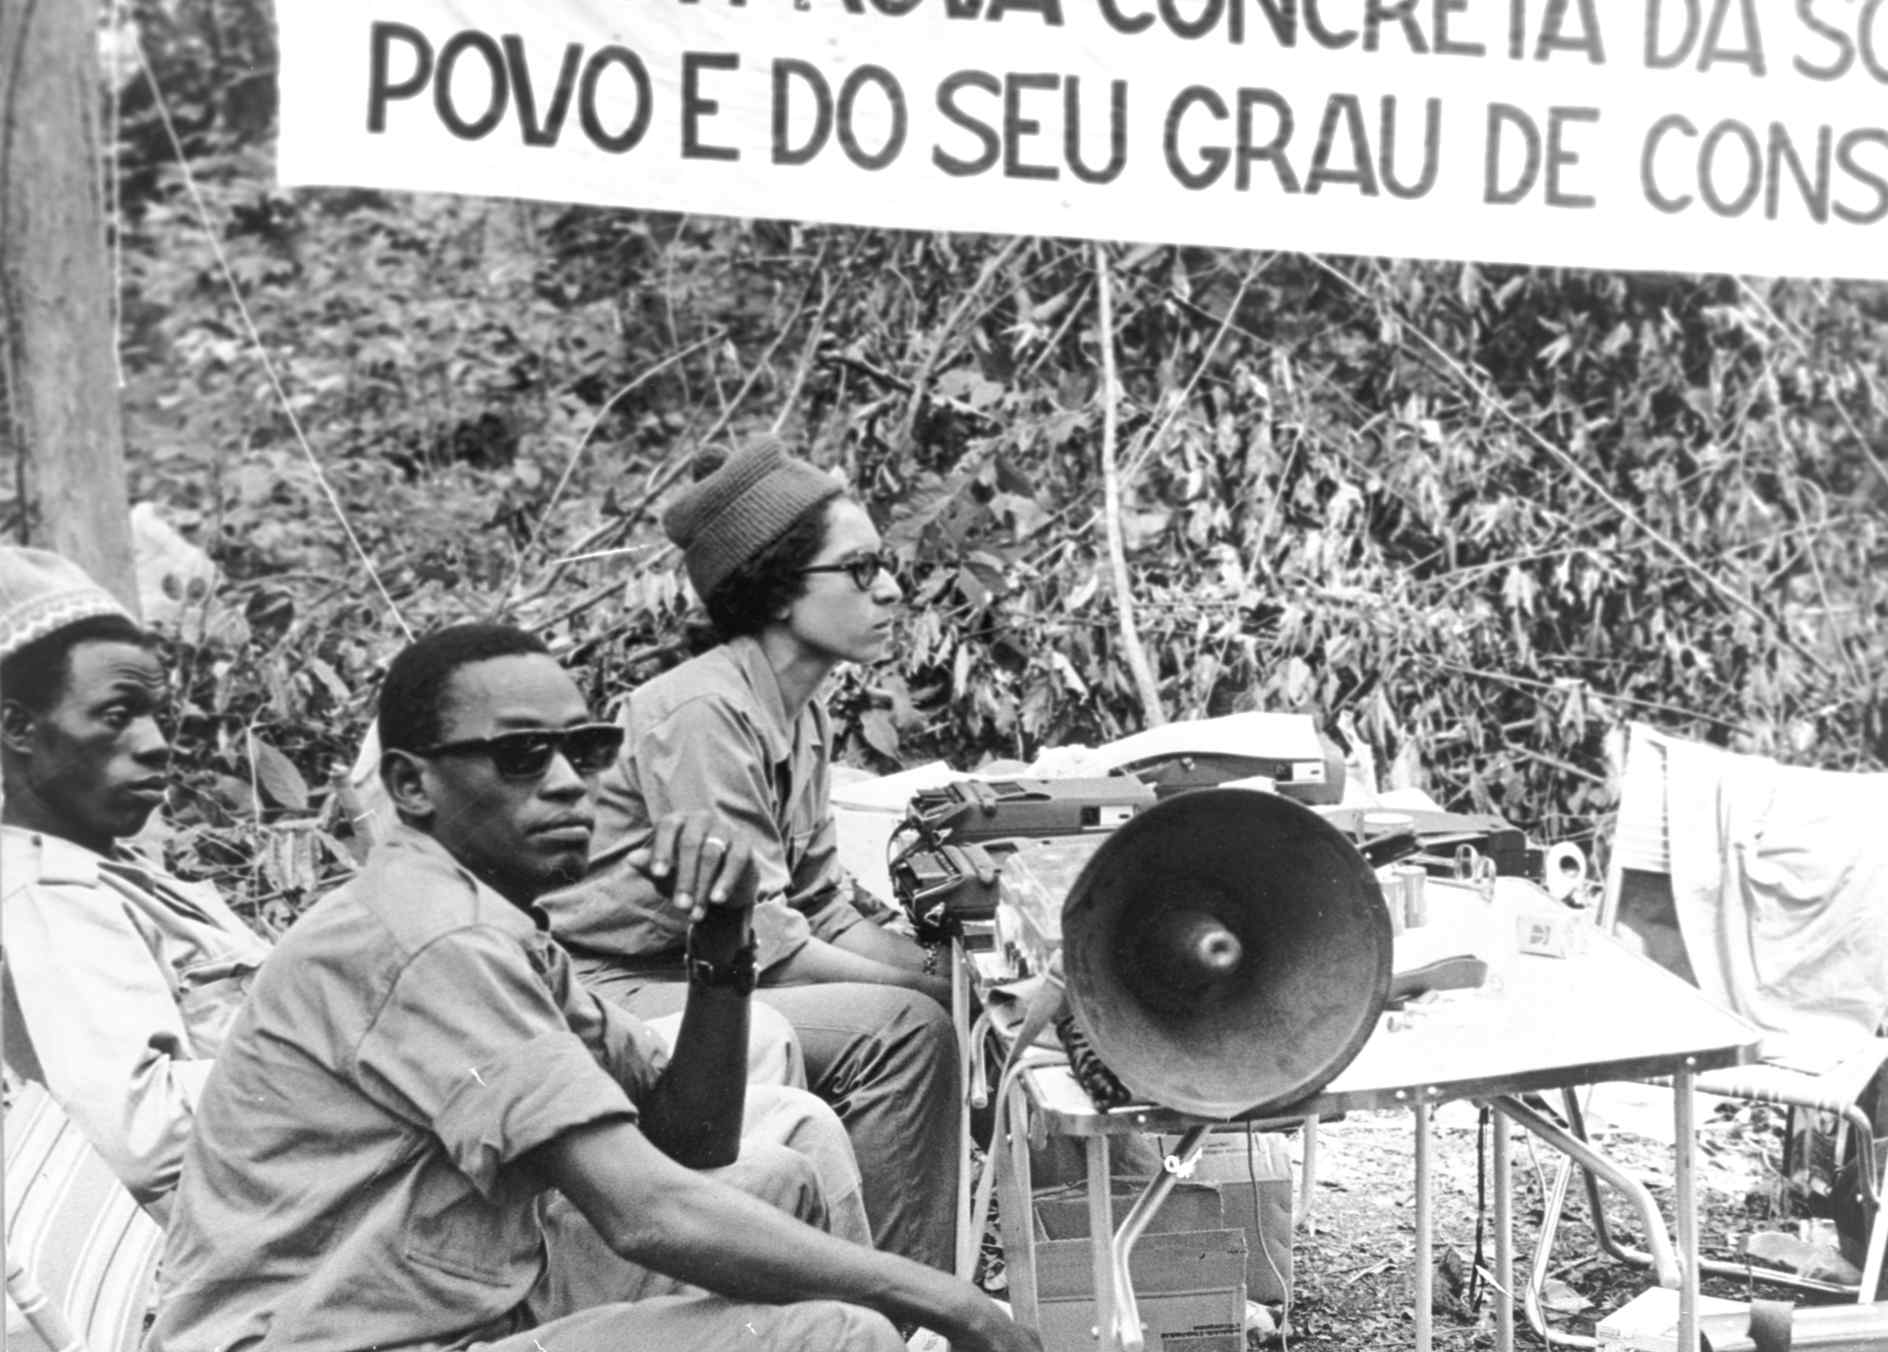 Amélia Araújo gravando os trabalhos da I Assembleia Nacional Popular da Guiné-Bissau para a Rádio Libertação. Lugajol, Boé. 23-24 de setembro de 1973. FMSMB-DAC